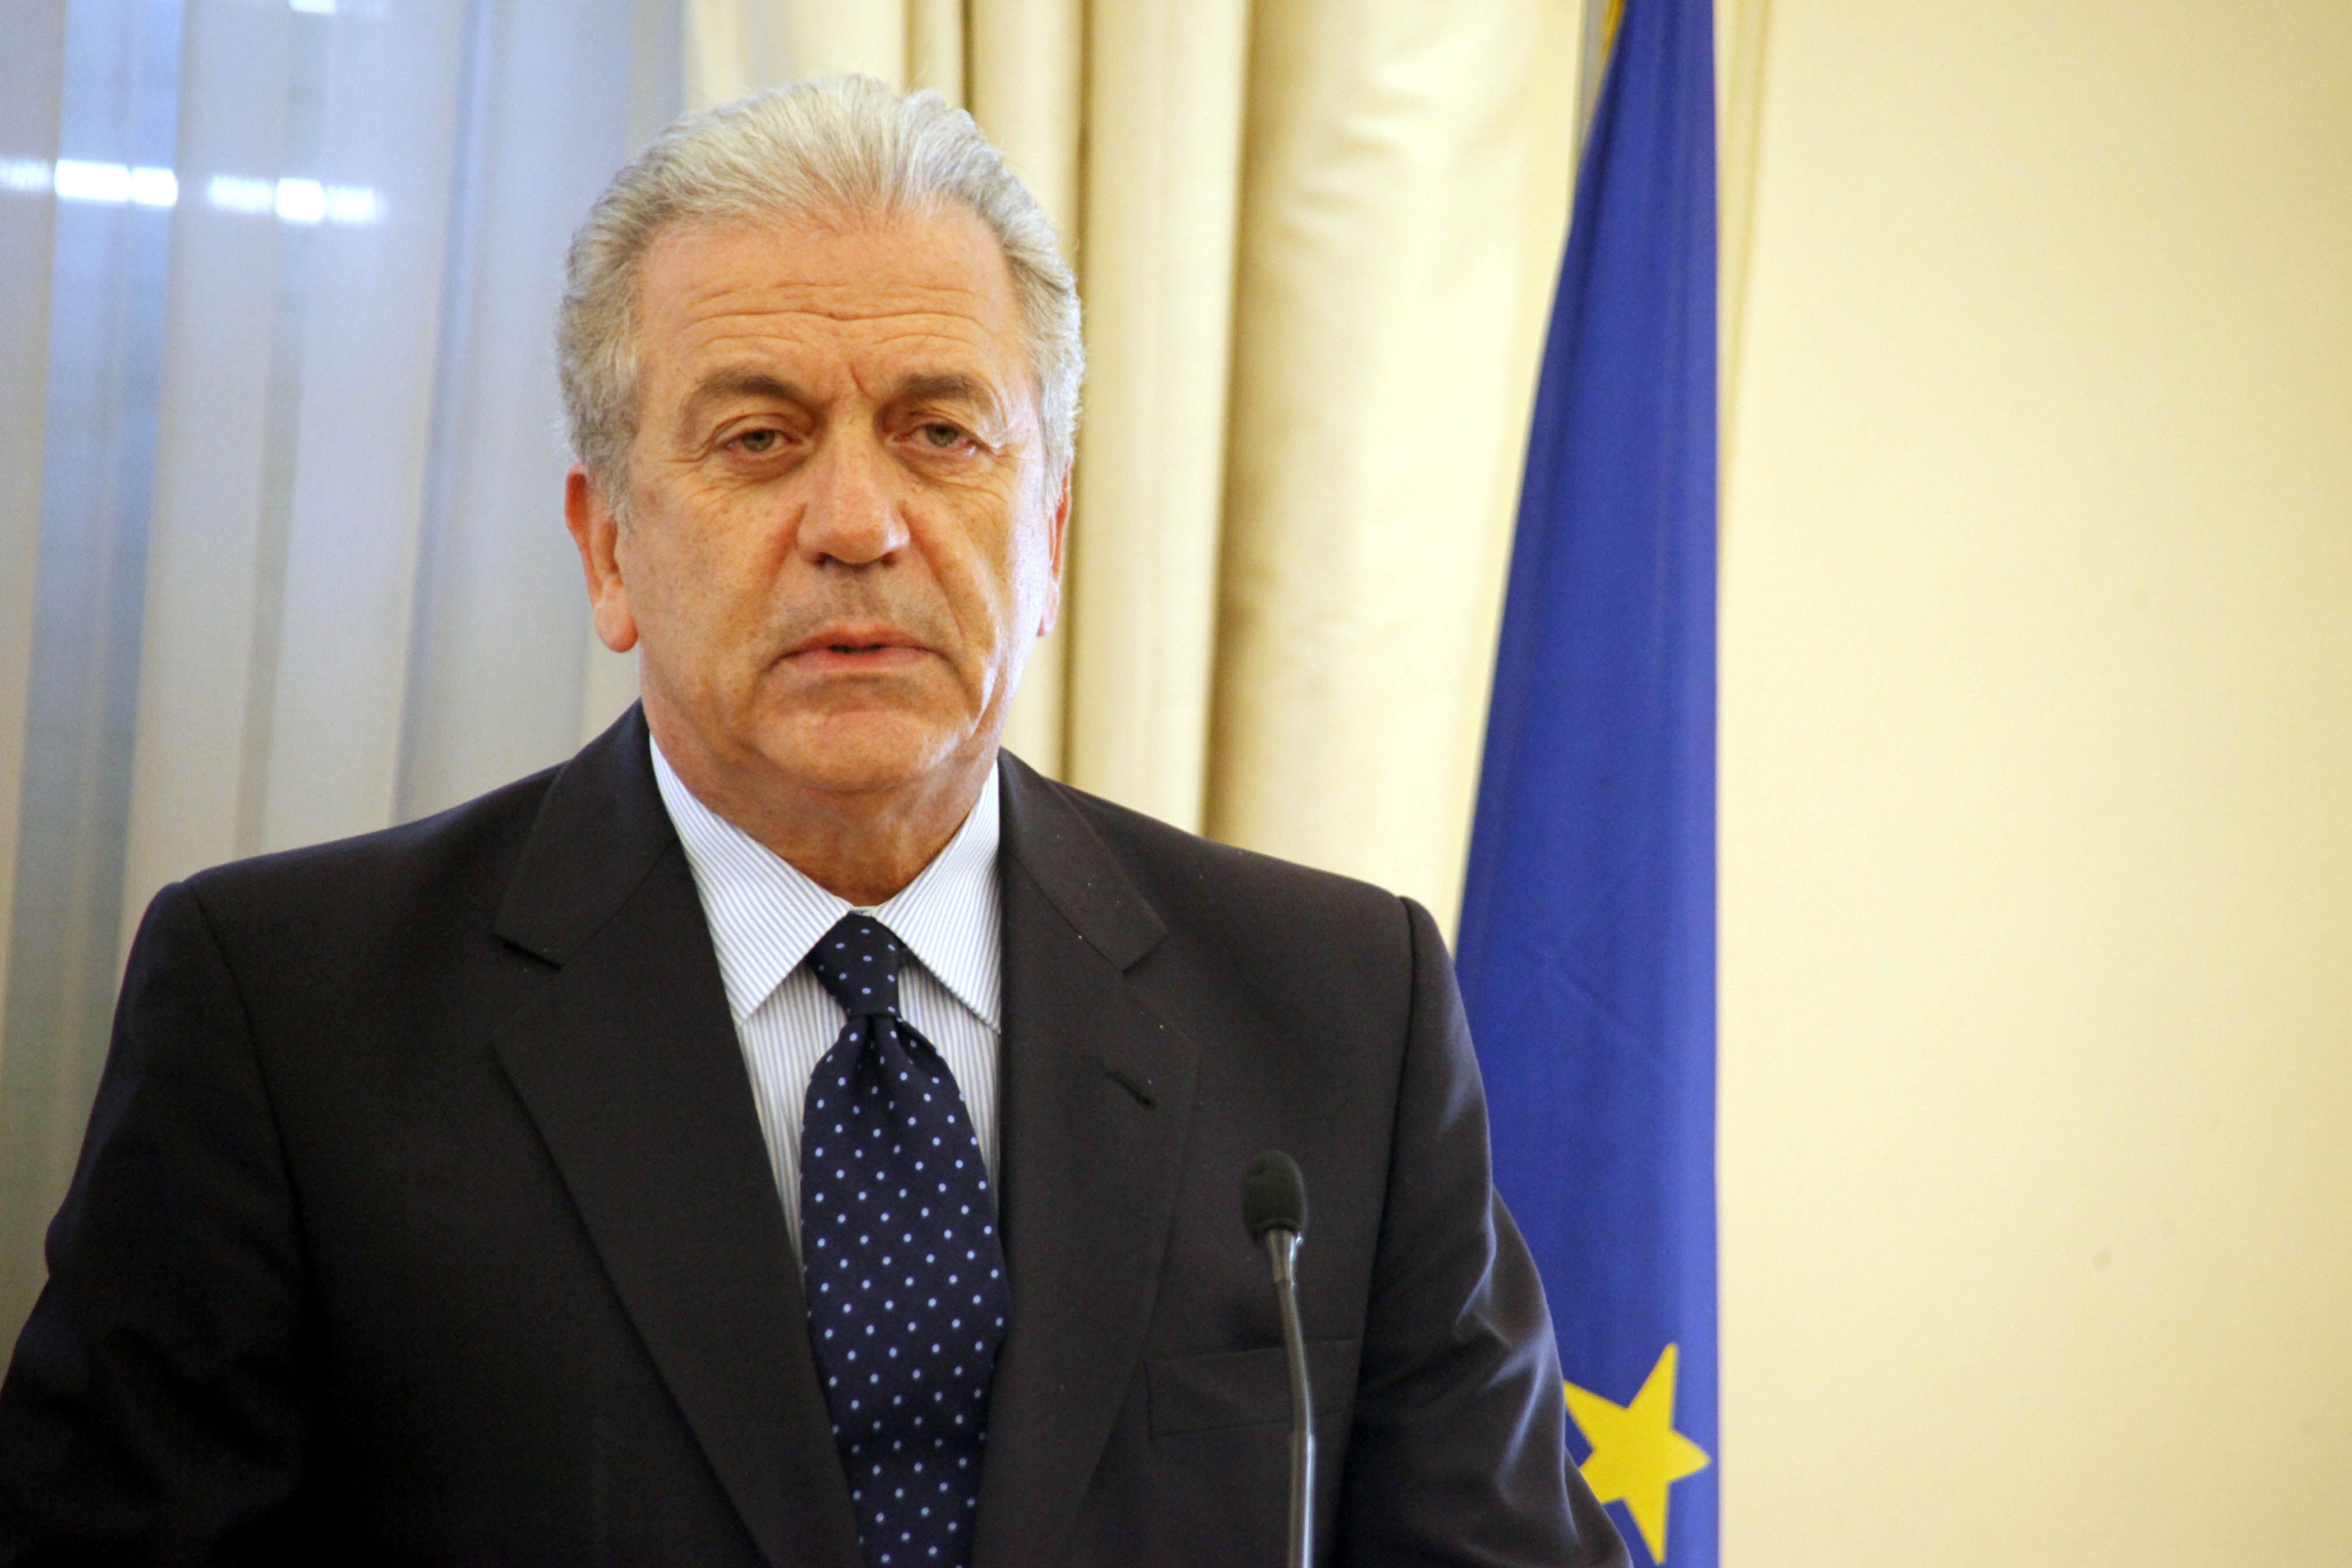 Mηνύματα κατά του εξτρεμισμού και του διχασμού της Ευρώπης έστειλε ο Aβραμόπουλος